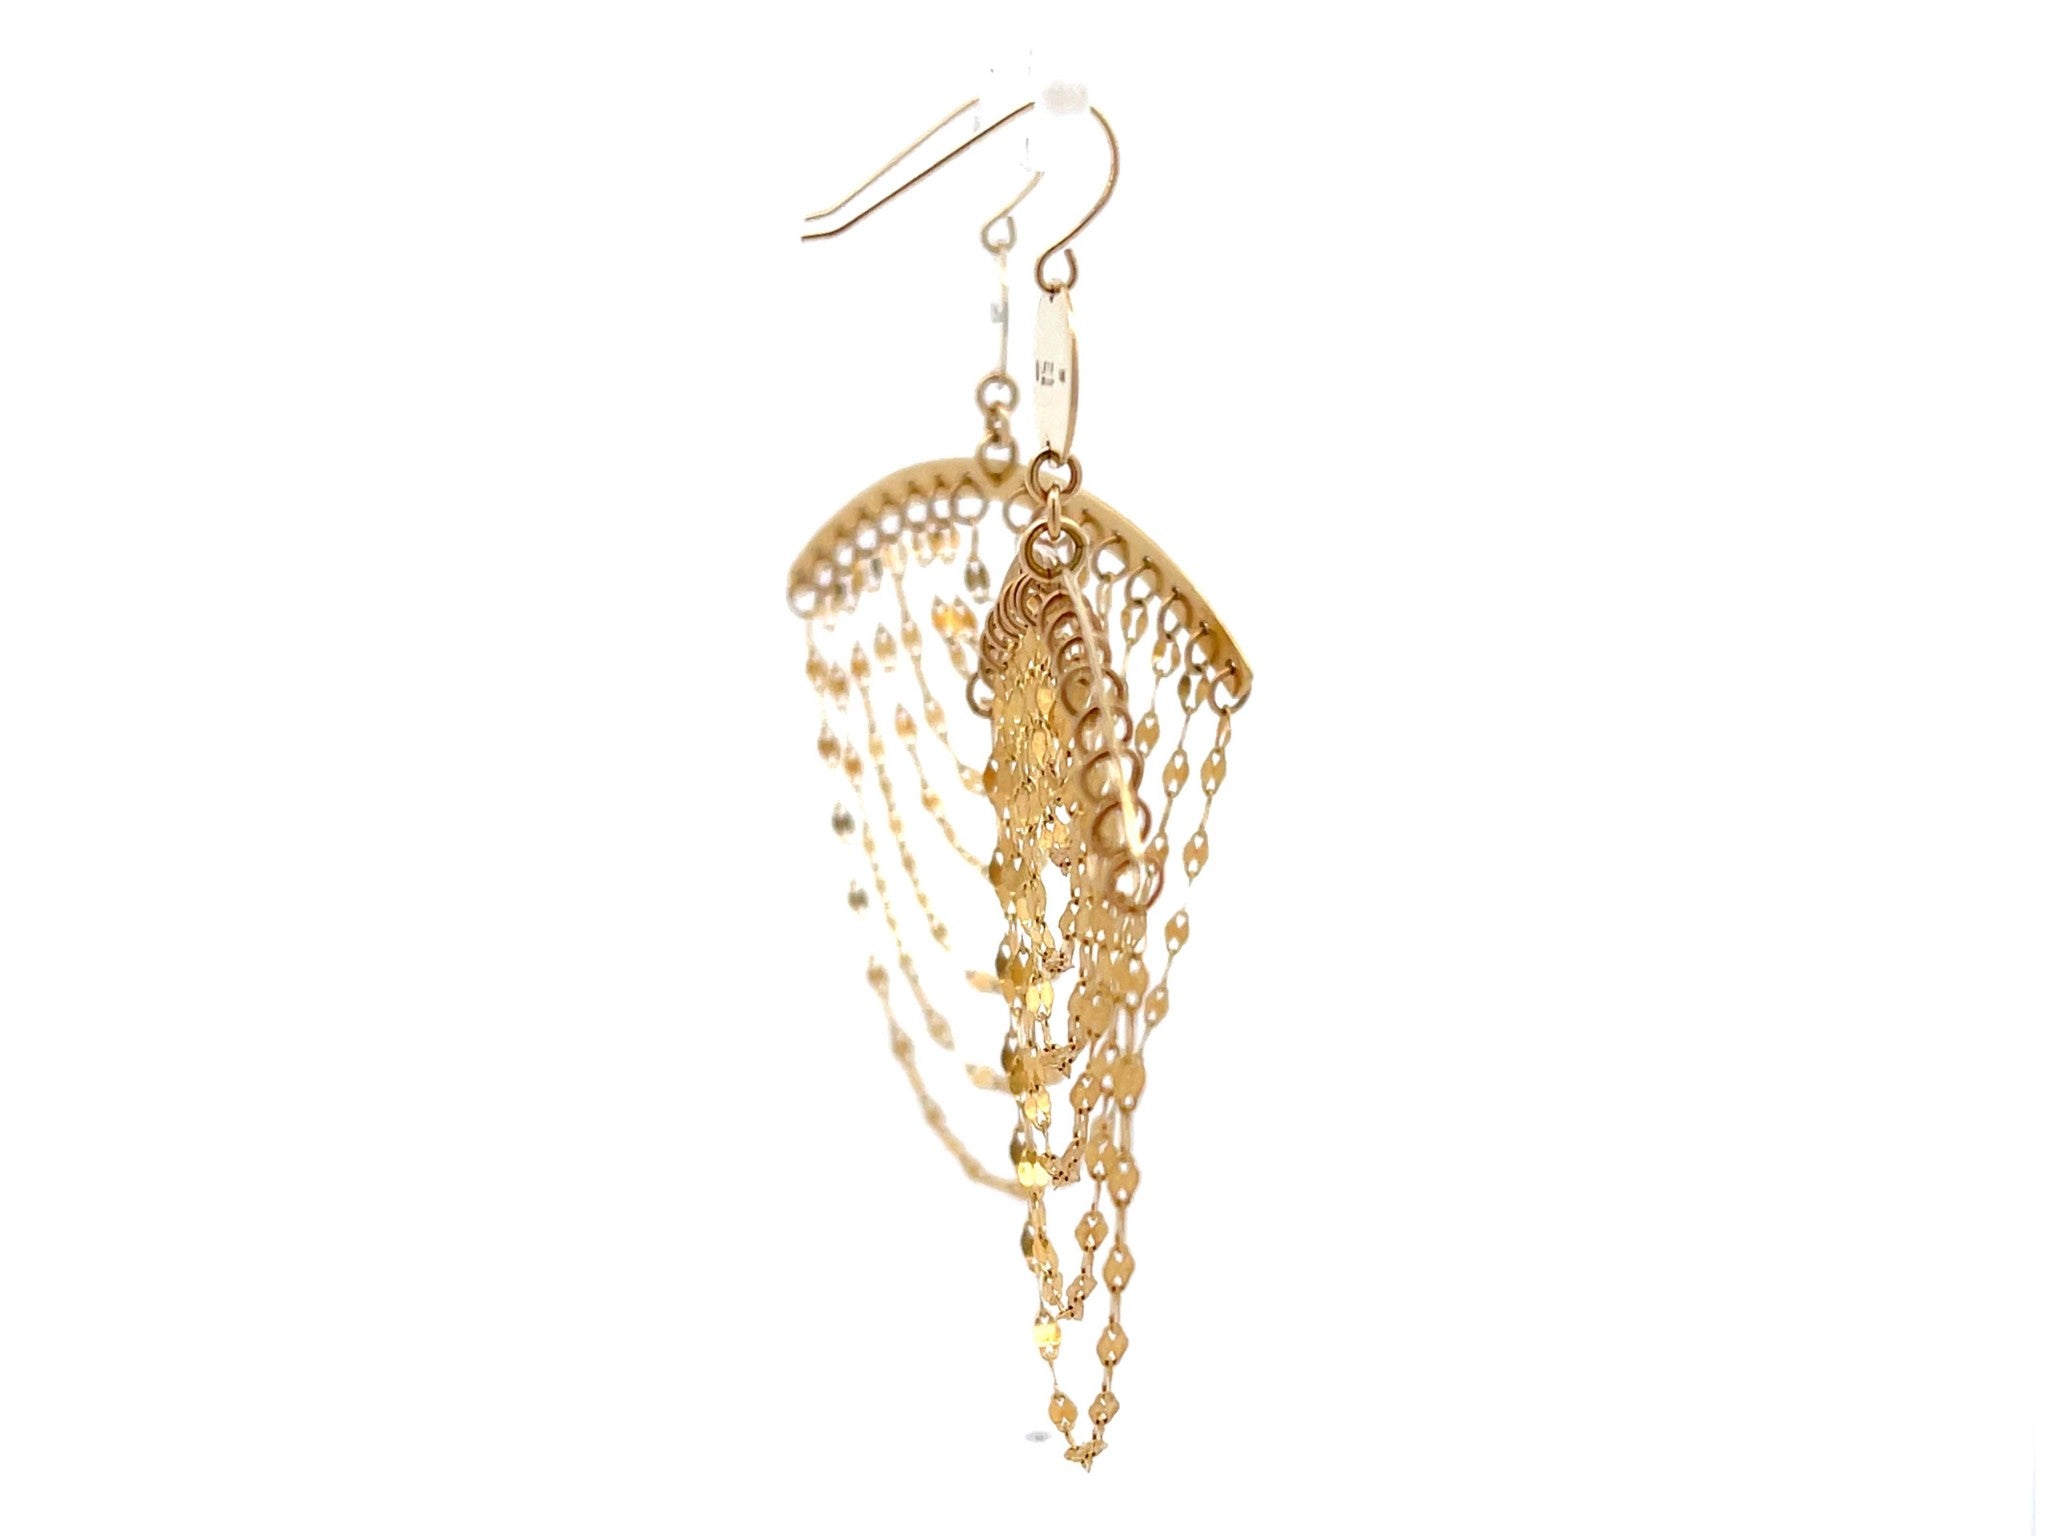 Lana Cascade Chandelier Earrings in 14K Yellow Gold